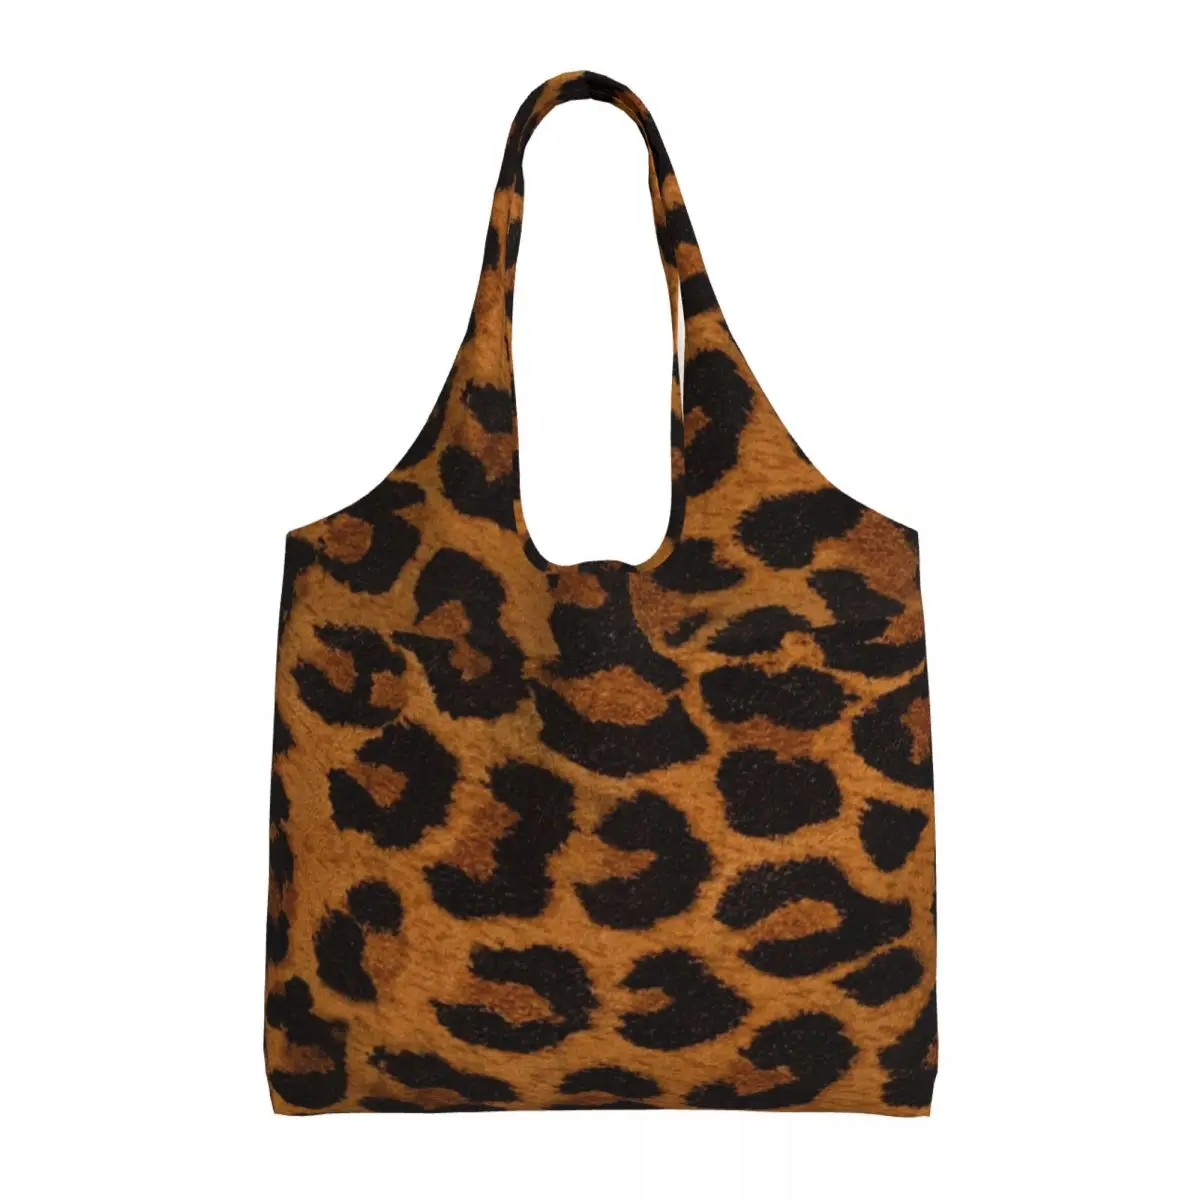 

Сумка для покупок с леопардовым принтом, многоразовая Студенческая сумочка из полиэстера с рисунком животного, для работы